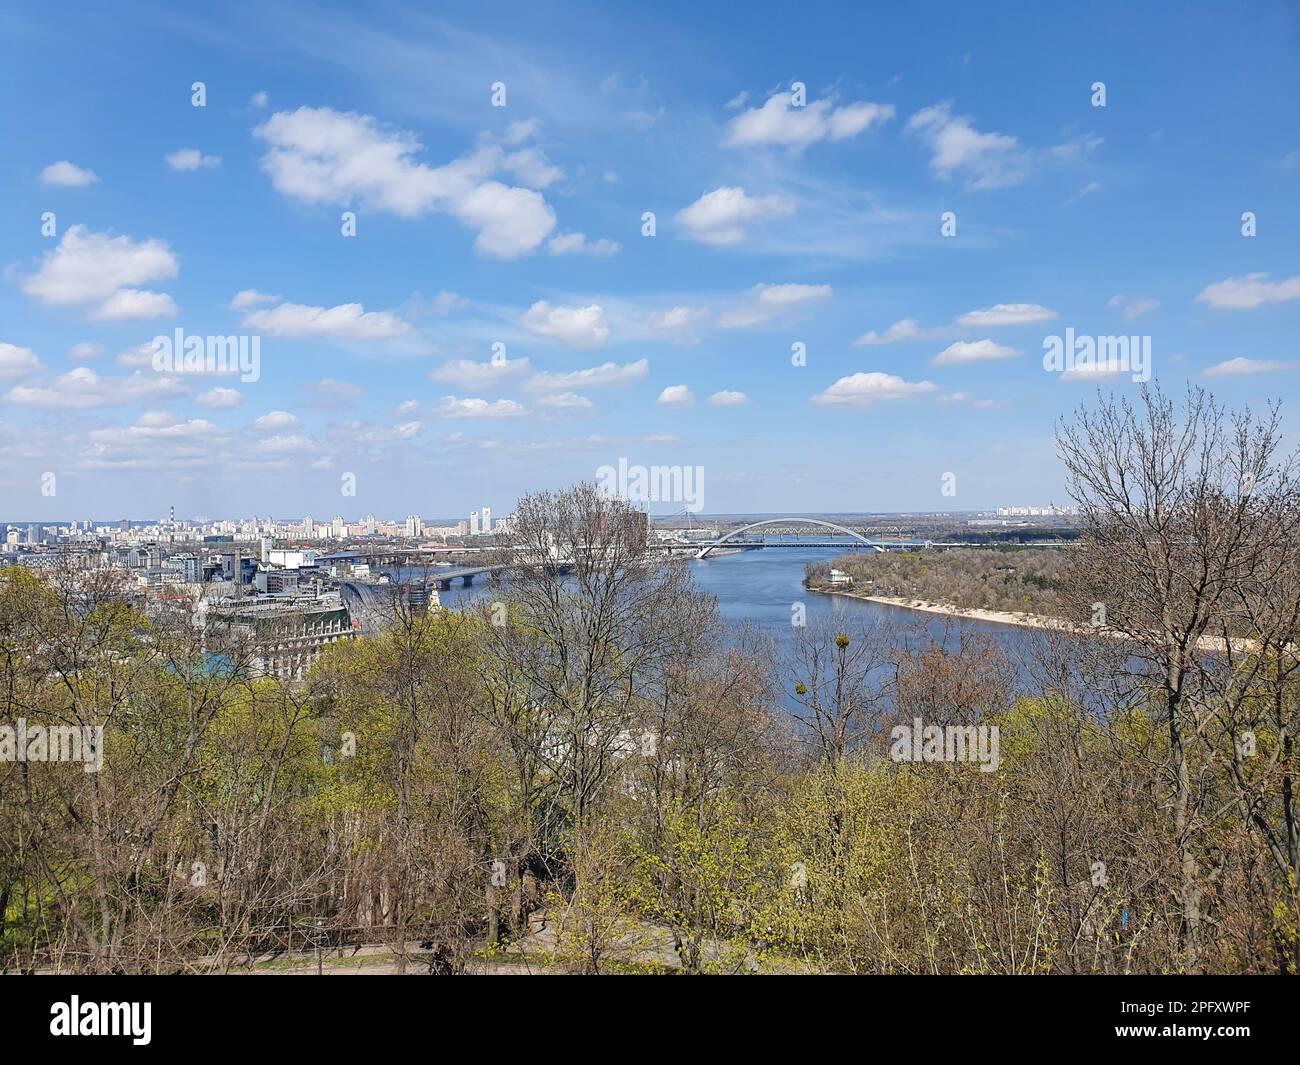 Blick auf das historische Viertel Podil, die geschäftige Stadt Kiew, und den majestätischen Fluss Dnipro vom Aussichtspunkt des Volodymyrska Hügels. Die Stockfoto